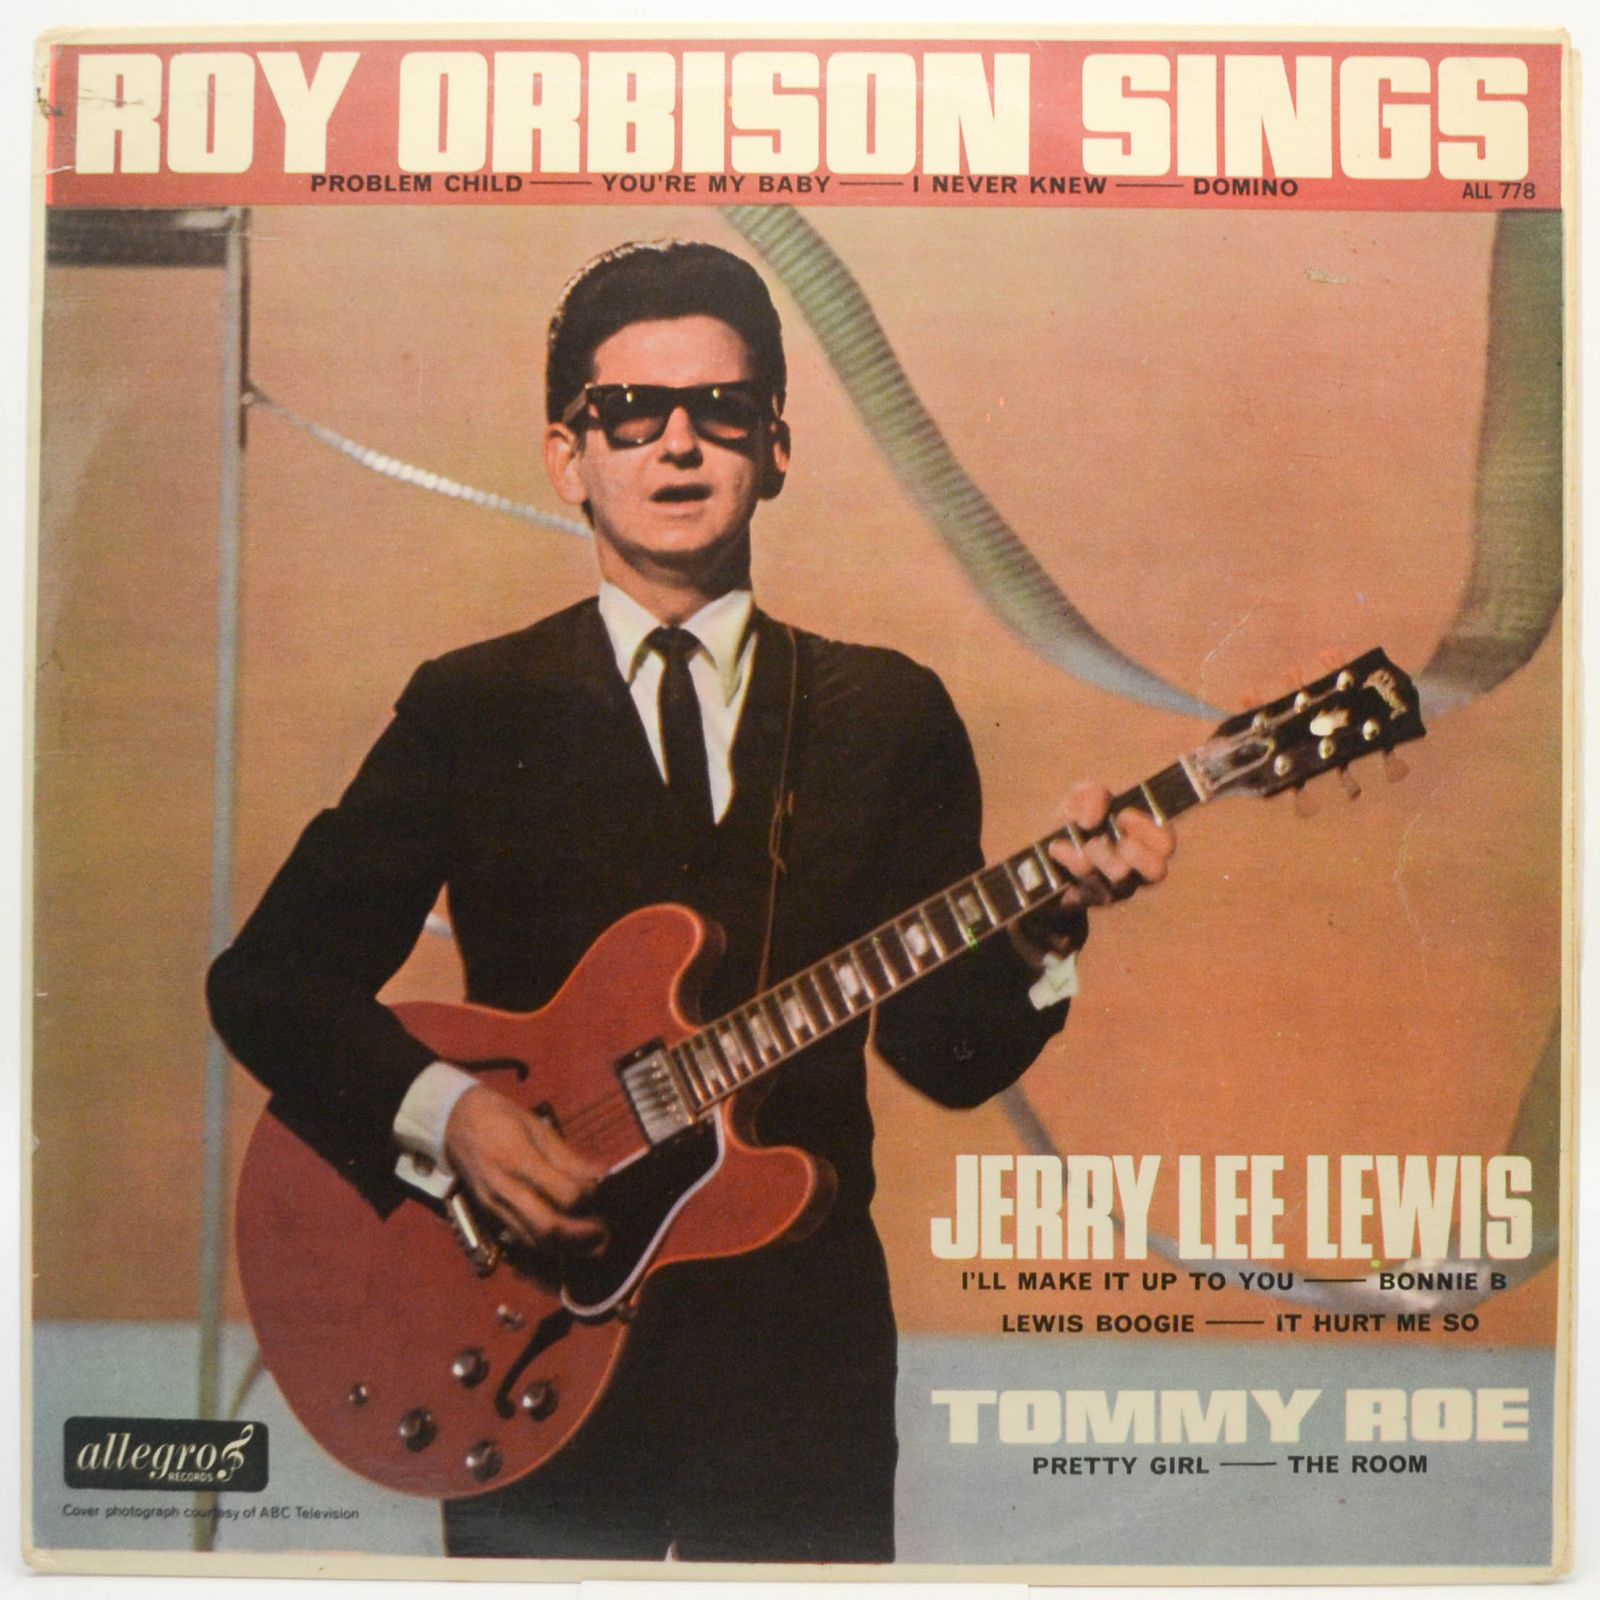 Roy Orbison Sings (UK), 1965